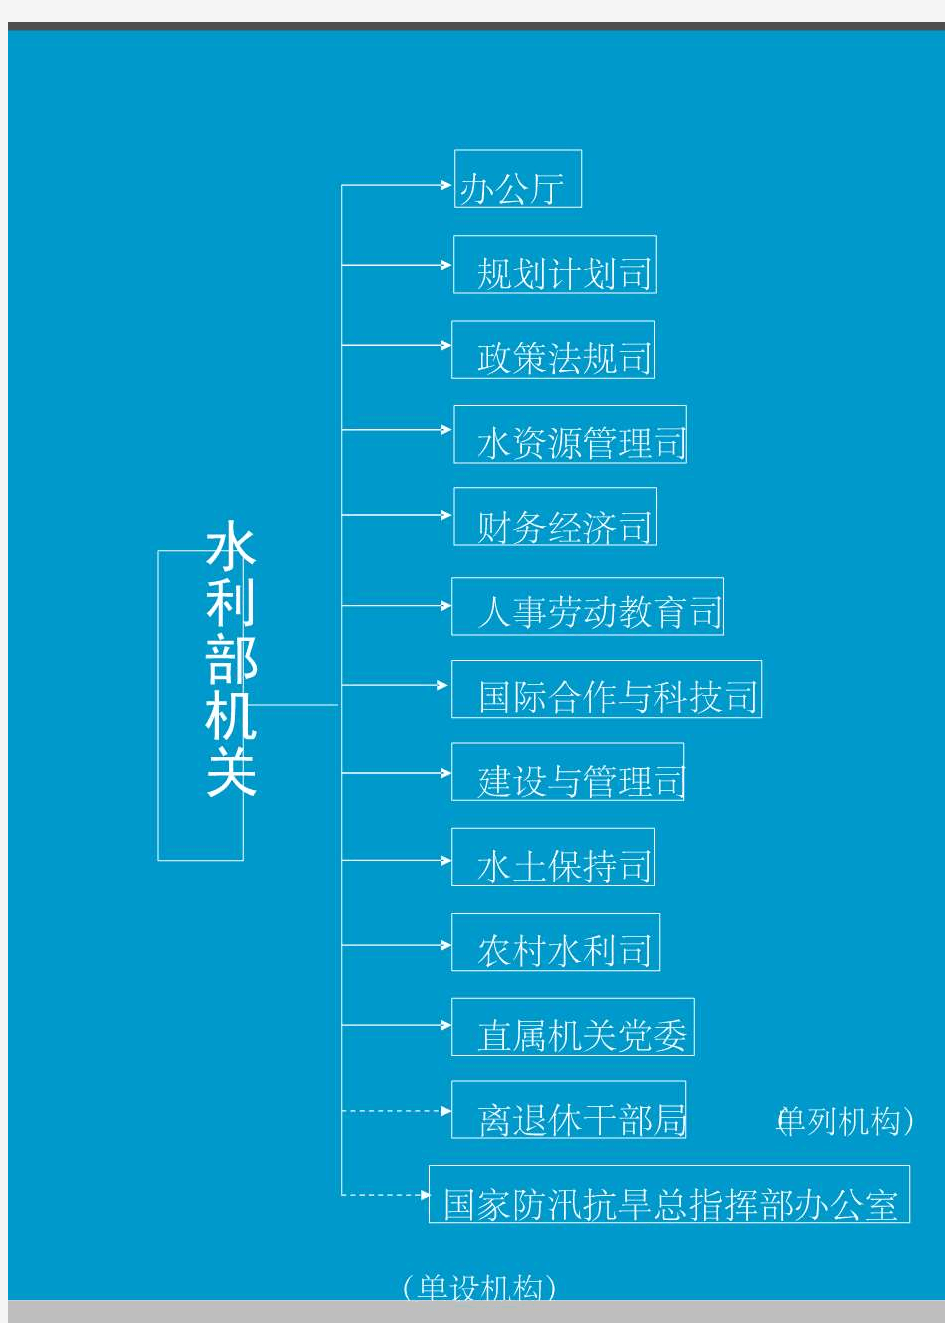 水利部直属单位机构框图 - 中华人民共和国水利部网站